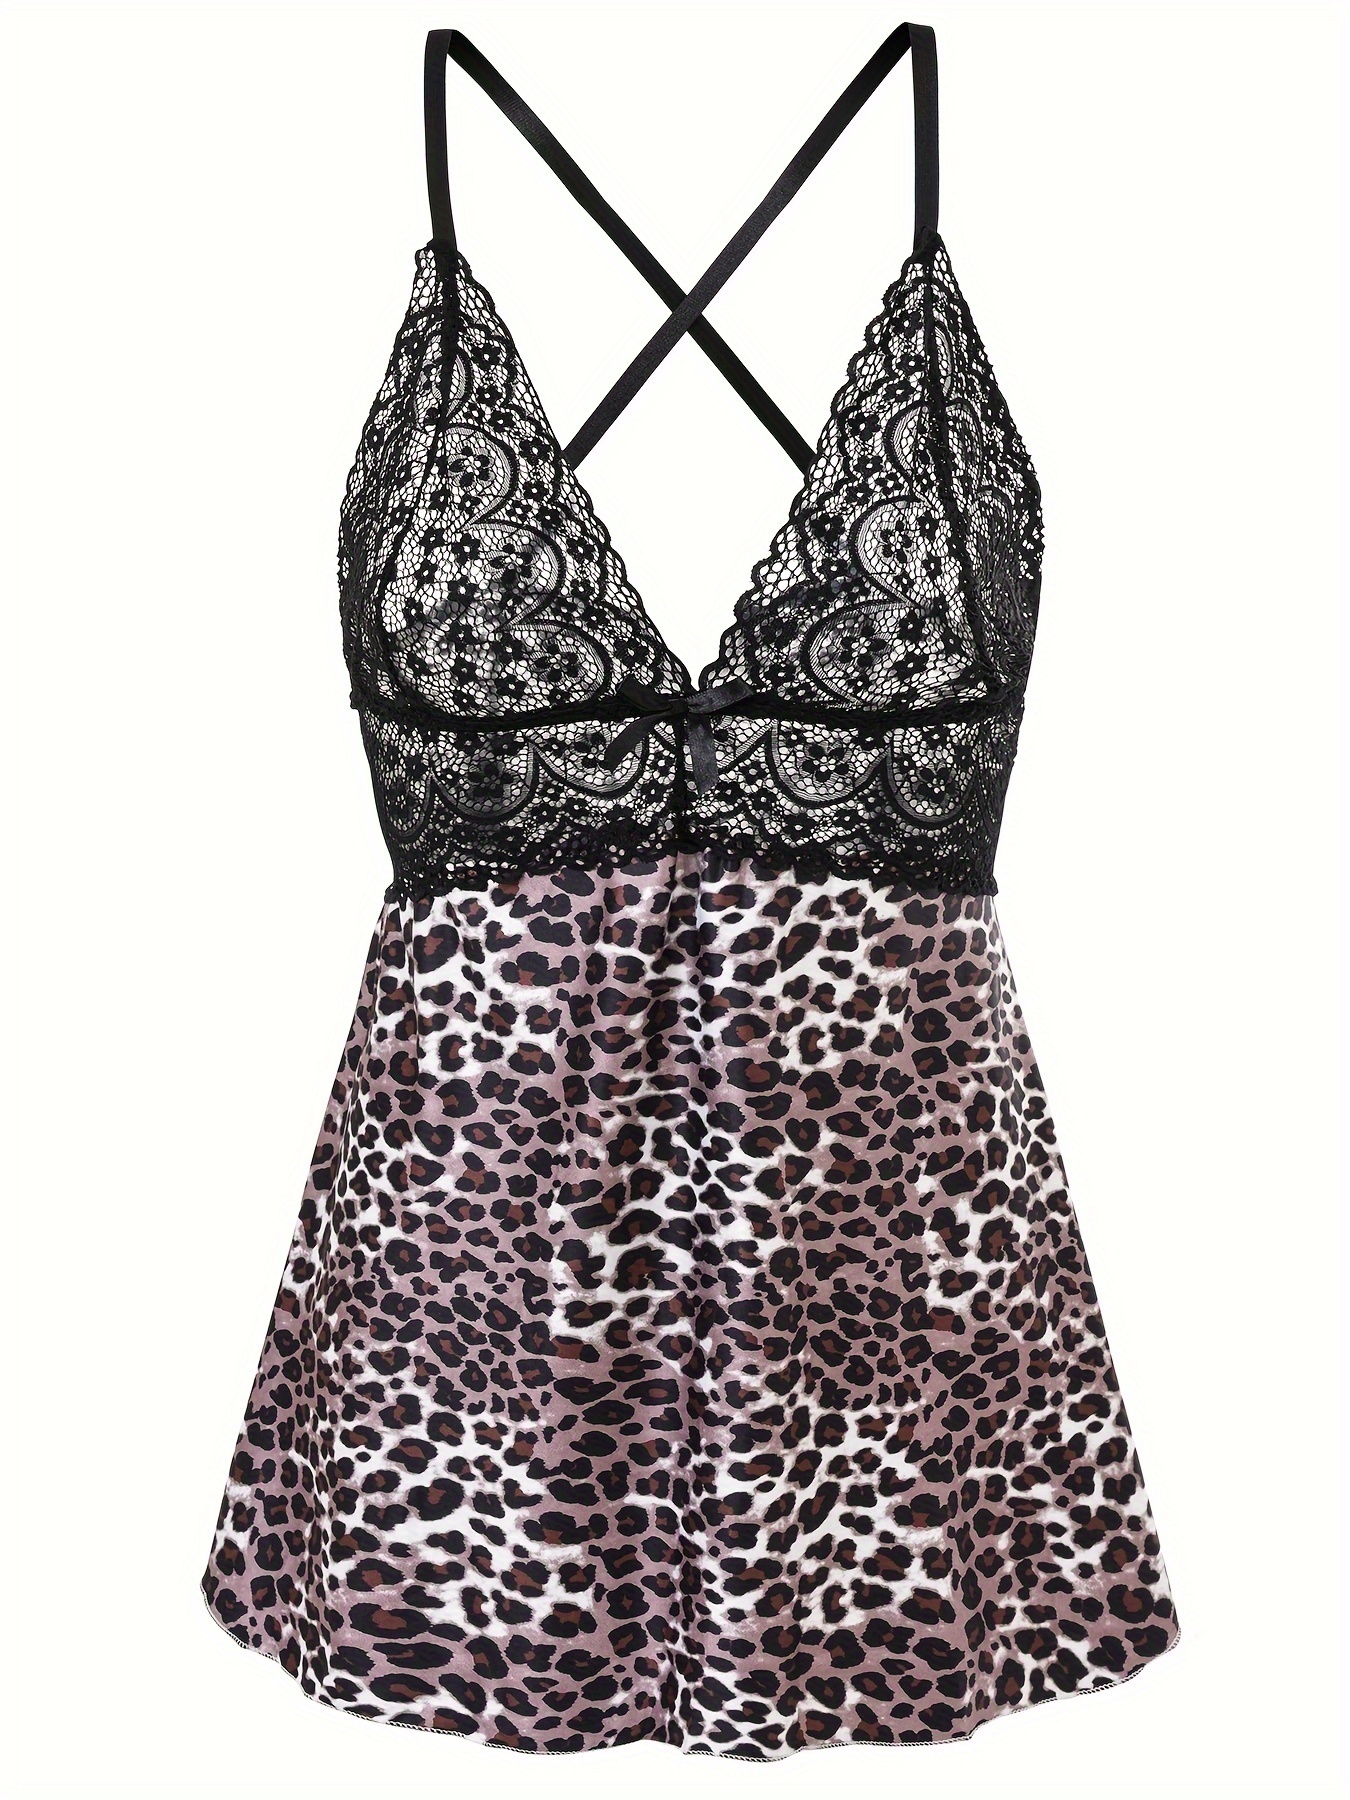 Plus Size Leopard Print & Lace Open Back Babydoll Lingerie - Leopard & Lace  Australia